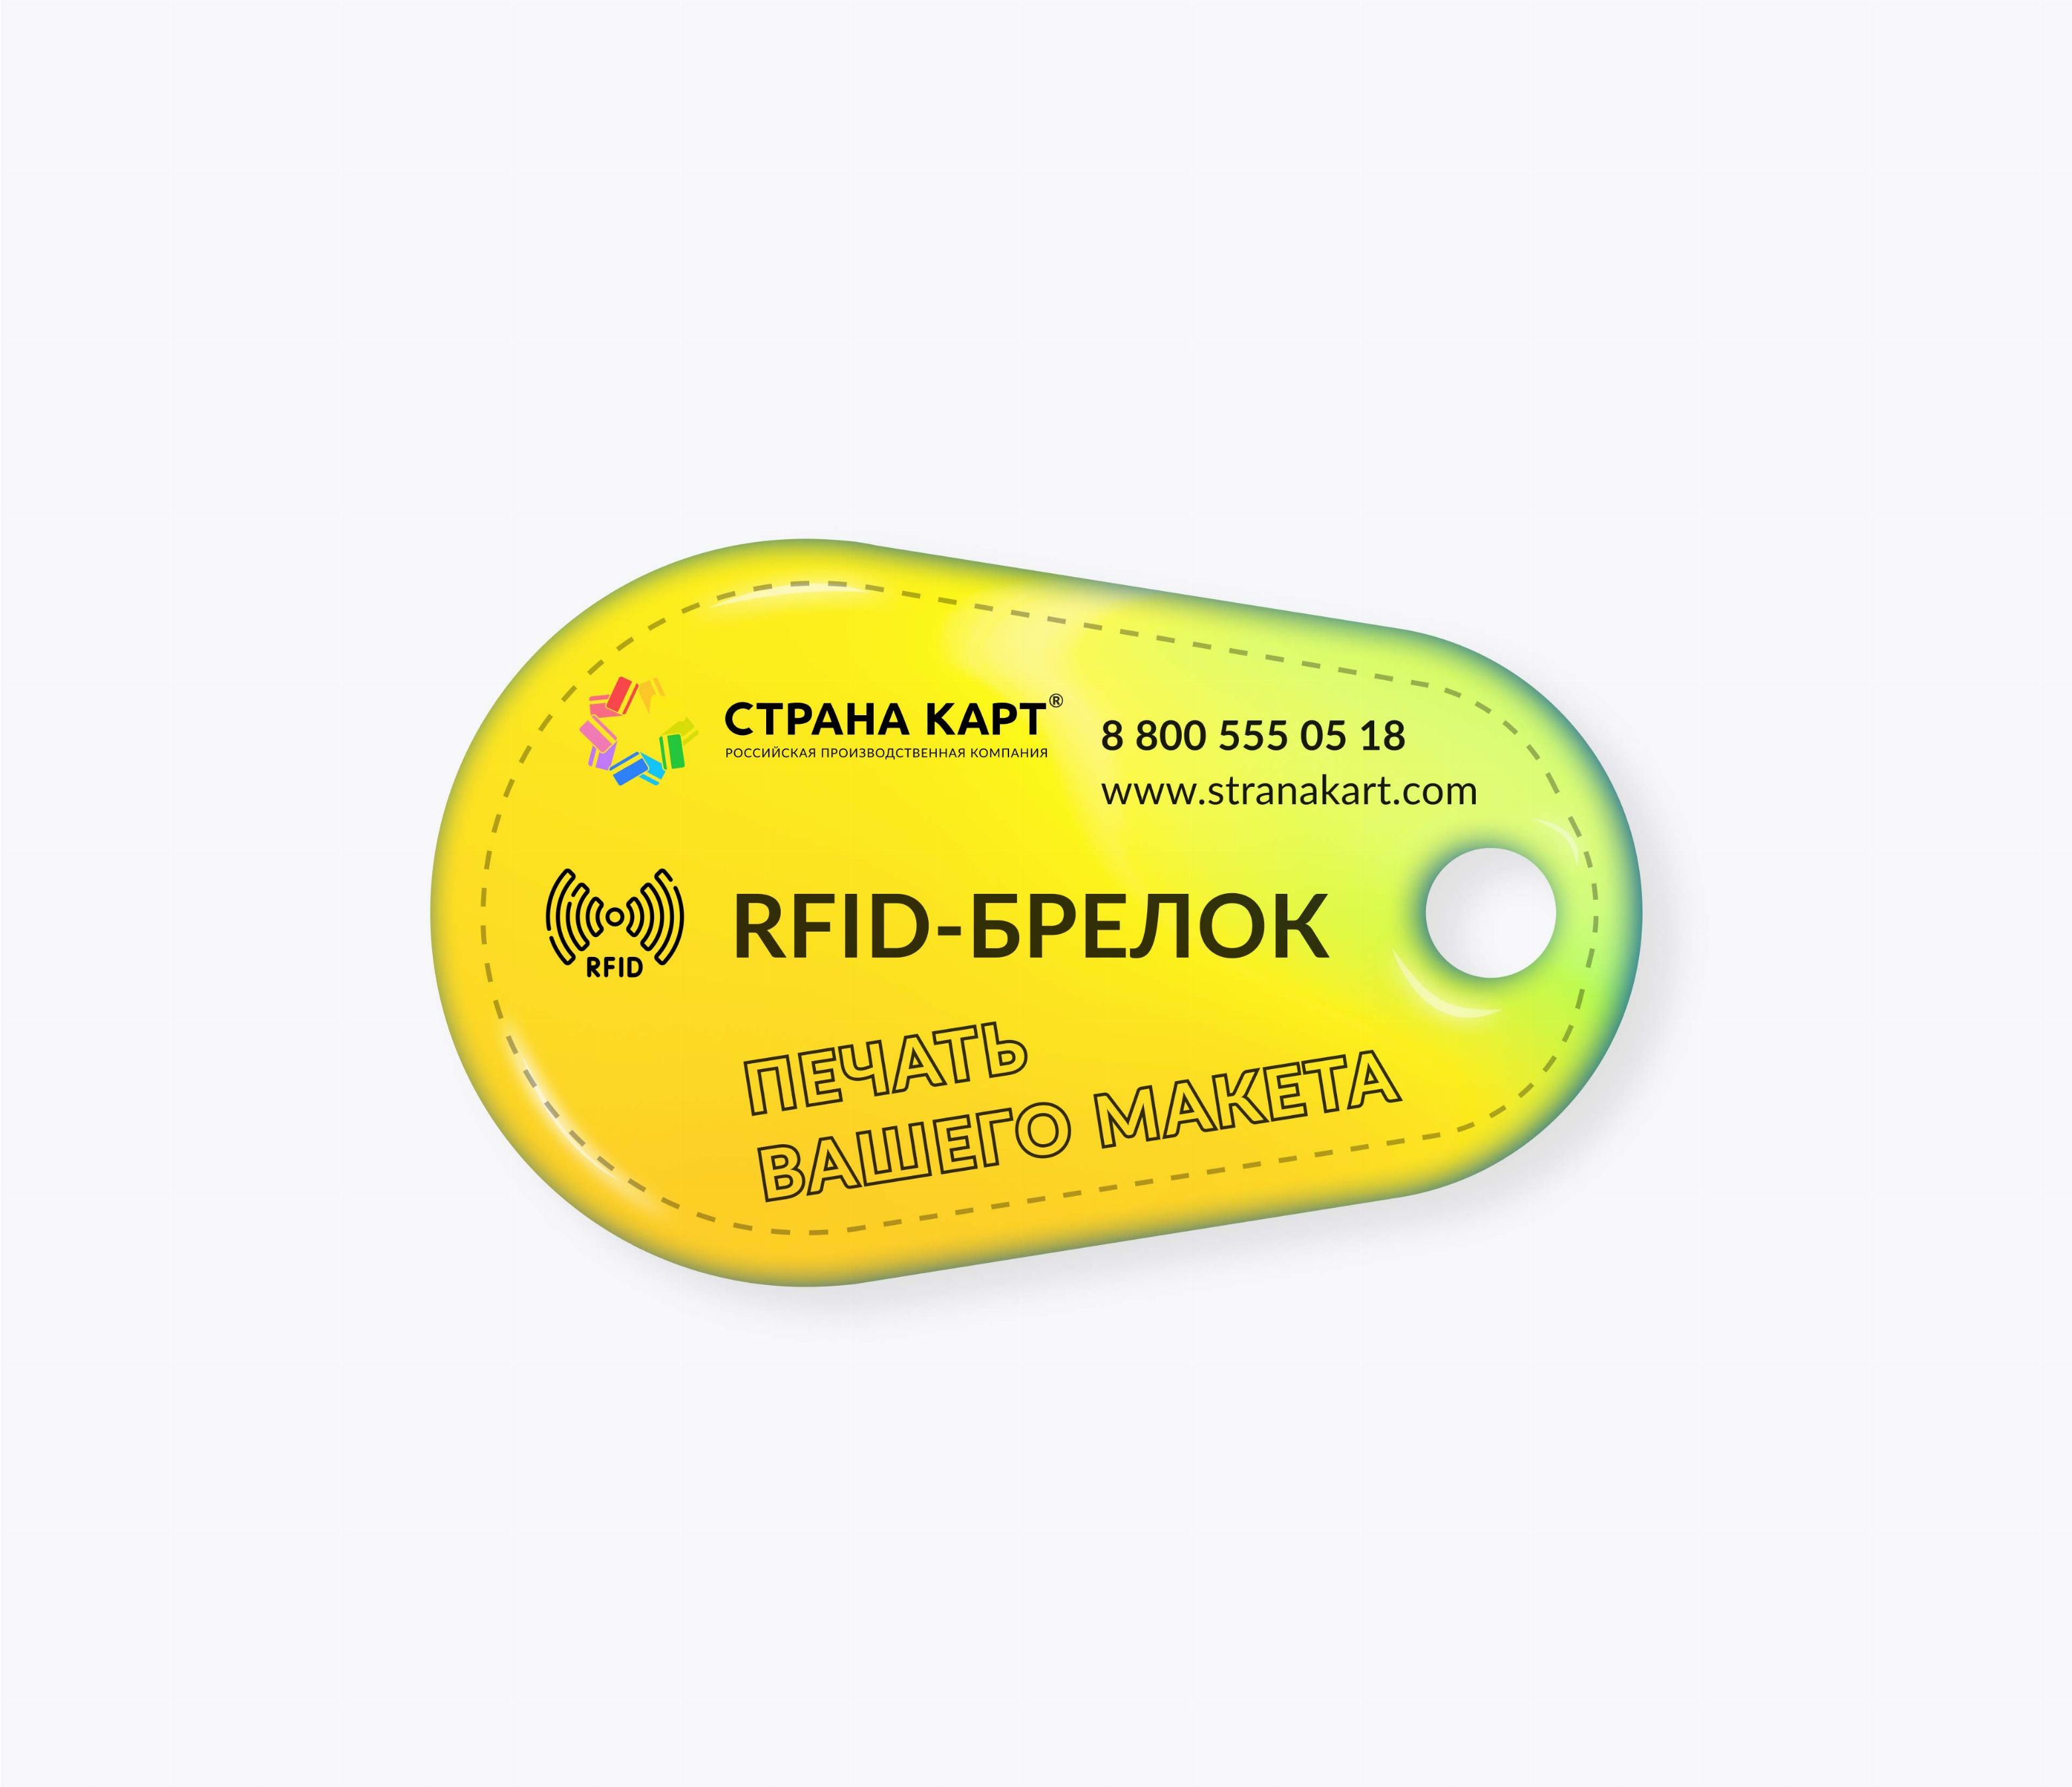 Каплевидные RFID-брелоки NEOKEY® с чипом NXP ICODE SLIX RFID-брелоки NEOKEY® с чипом NXP ICODE SLIX и вашим логотипом